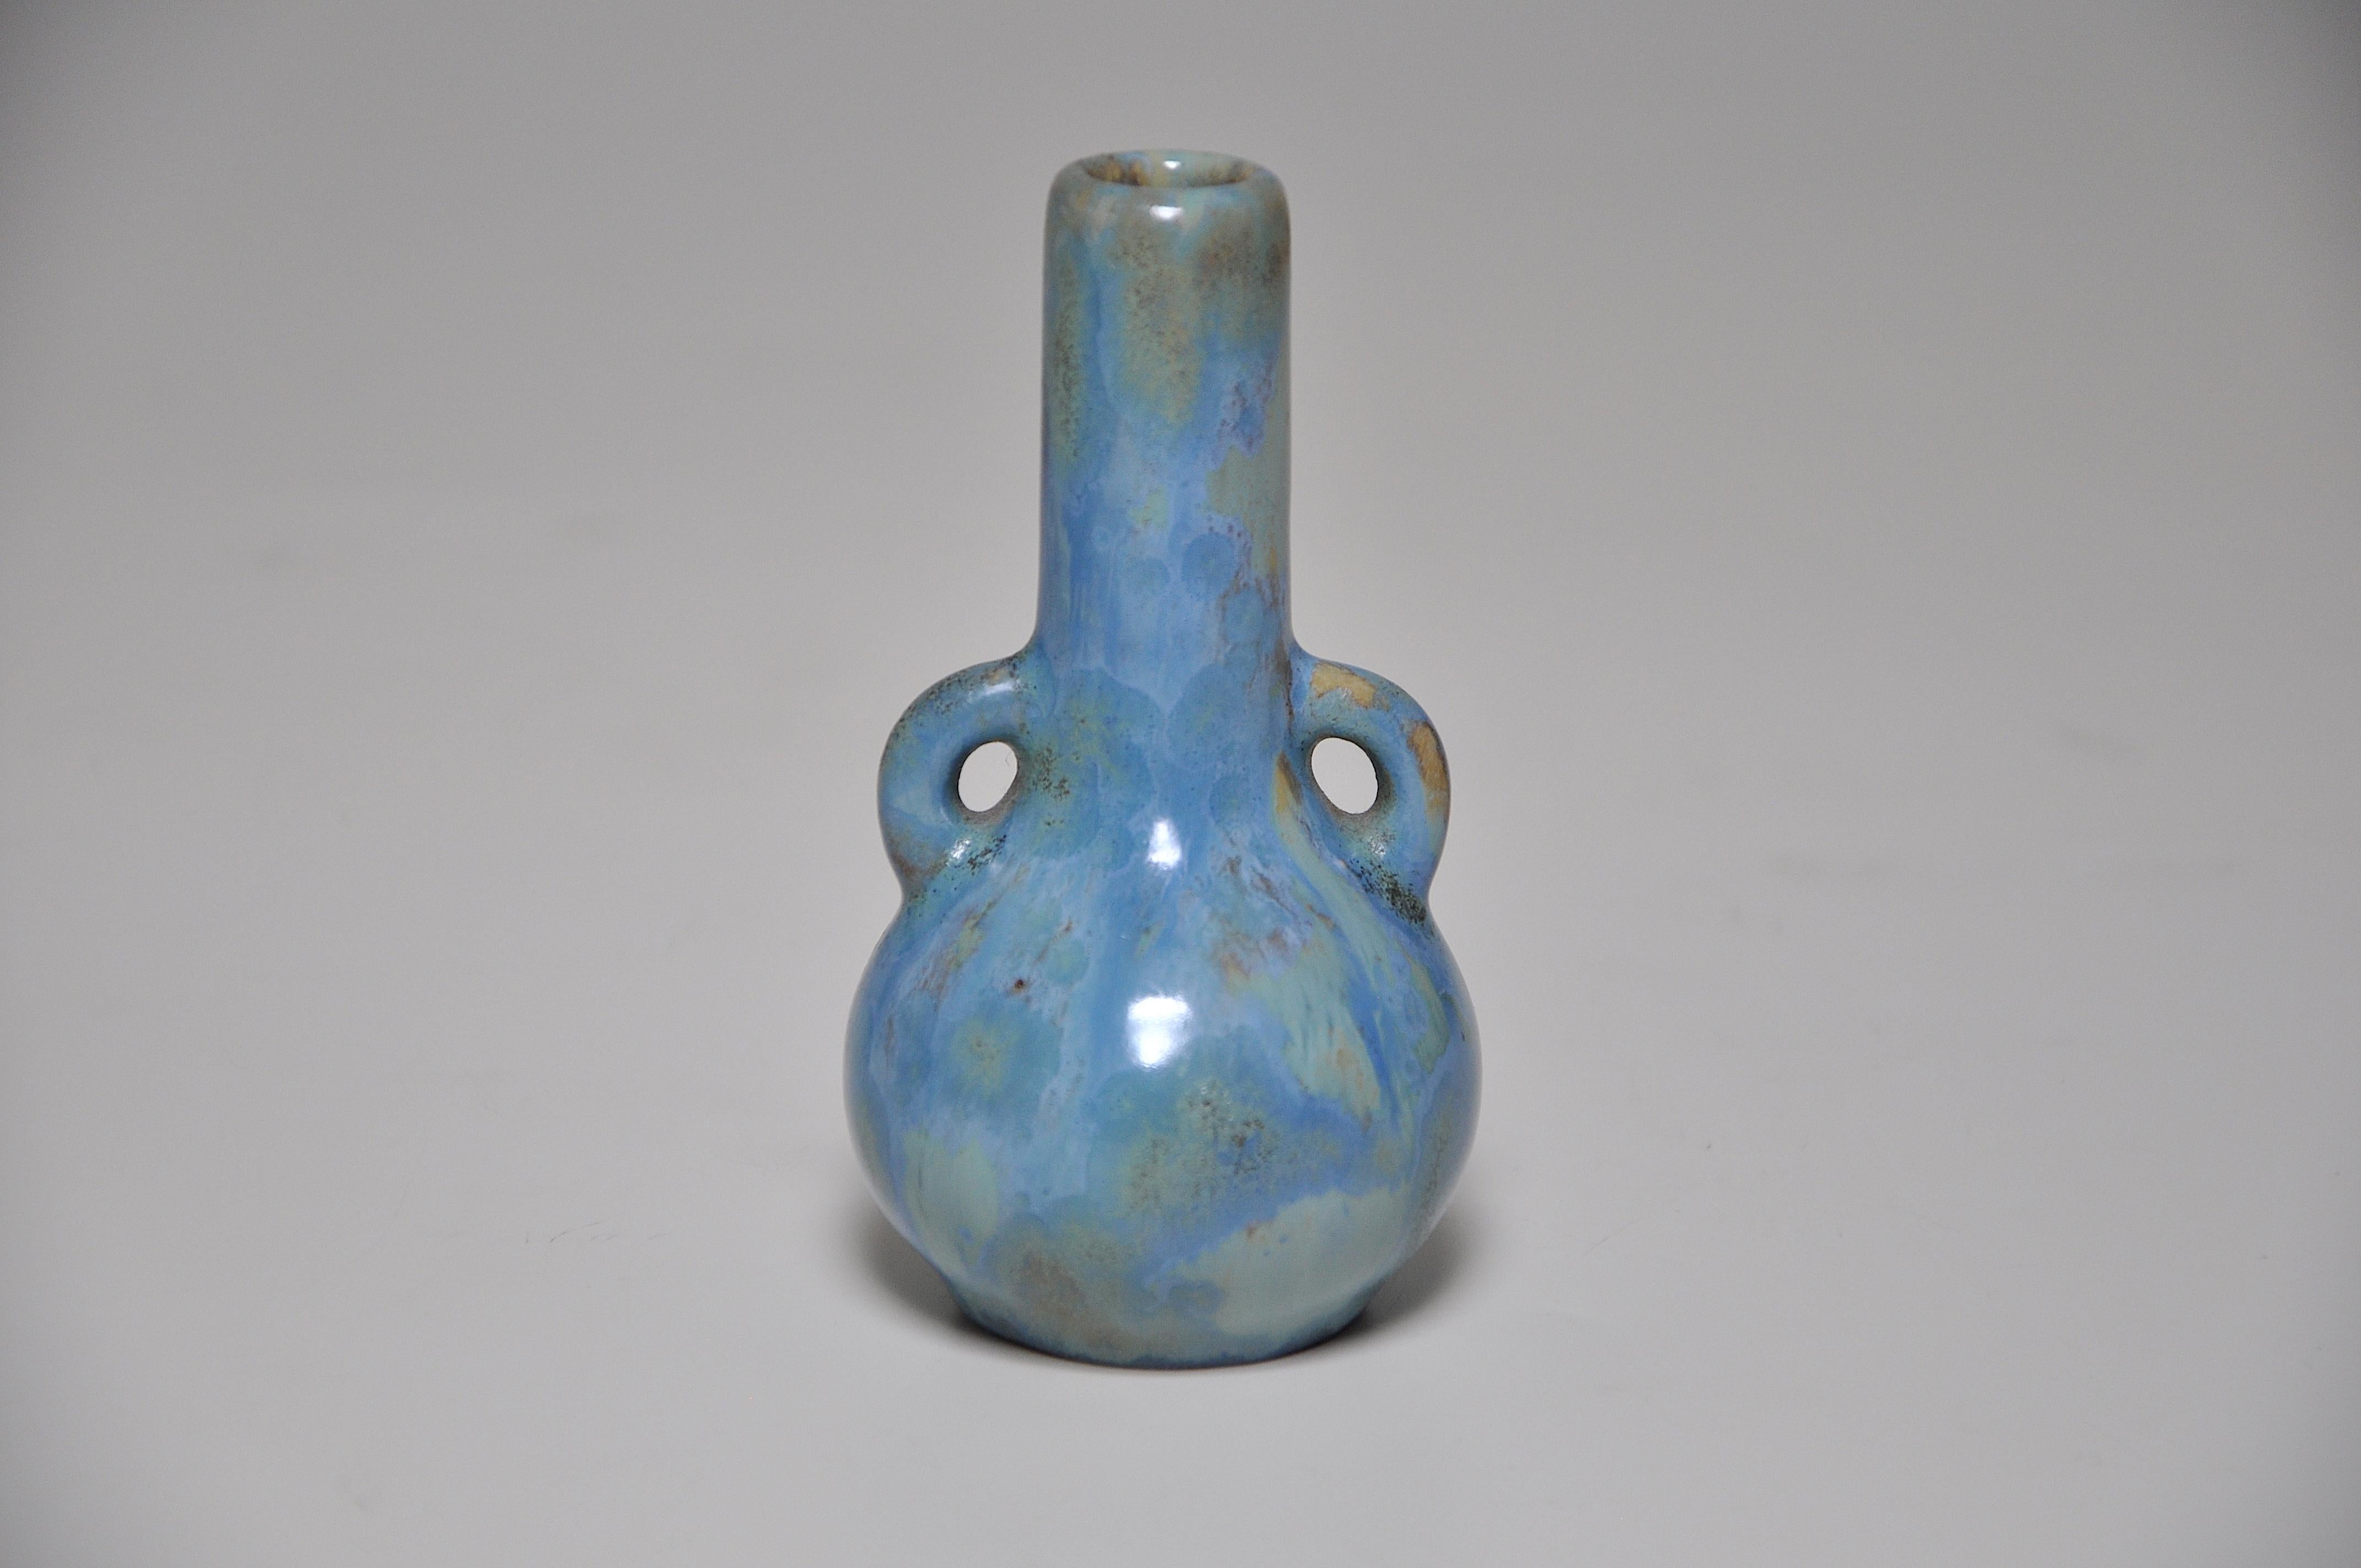 Exquis vase miniature en grès de forme bulbeuse, avec de minuscules anses jumelles et un long col, recouvert d'une glaçure bleue intense et fluide, cristalline par endroits, sur un fond jaune. Par l'atelier de céramique français 'Pierrefonds' dans